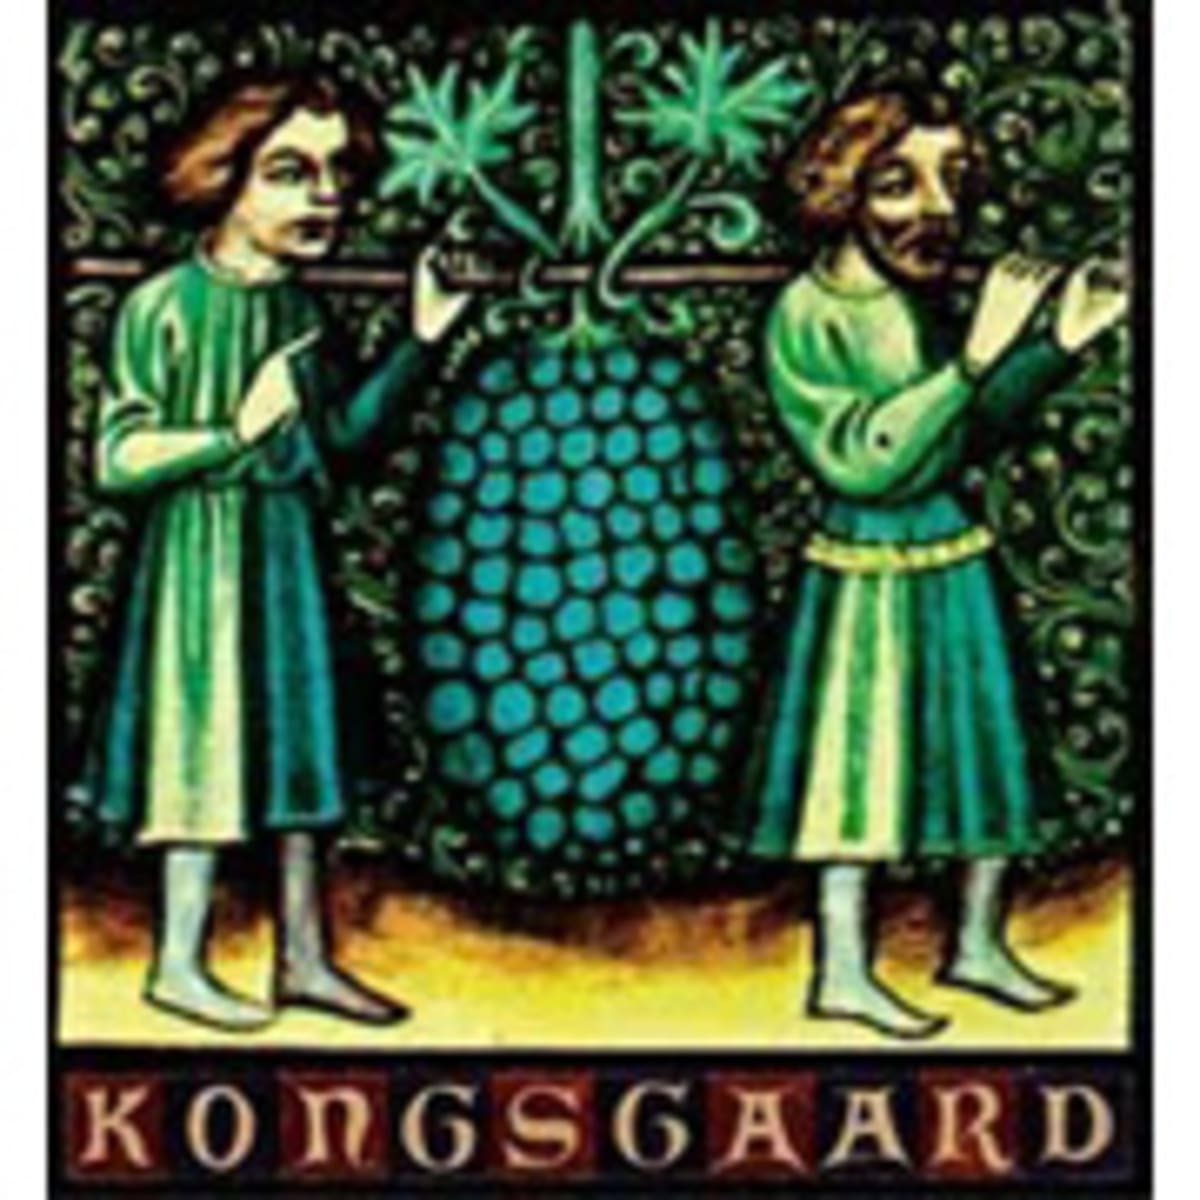 Kongsgaard Viognier-Roussanne 2002 Front Label